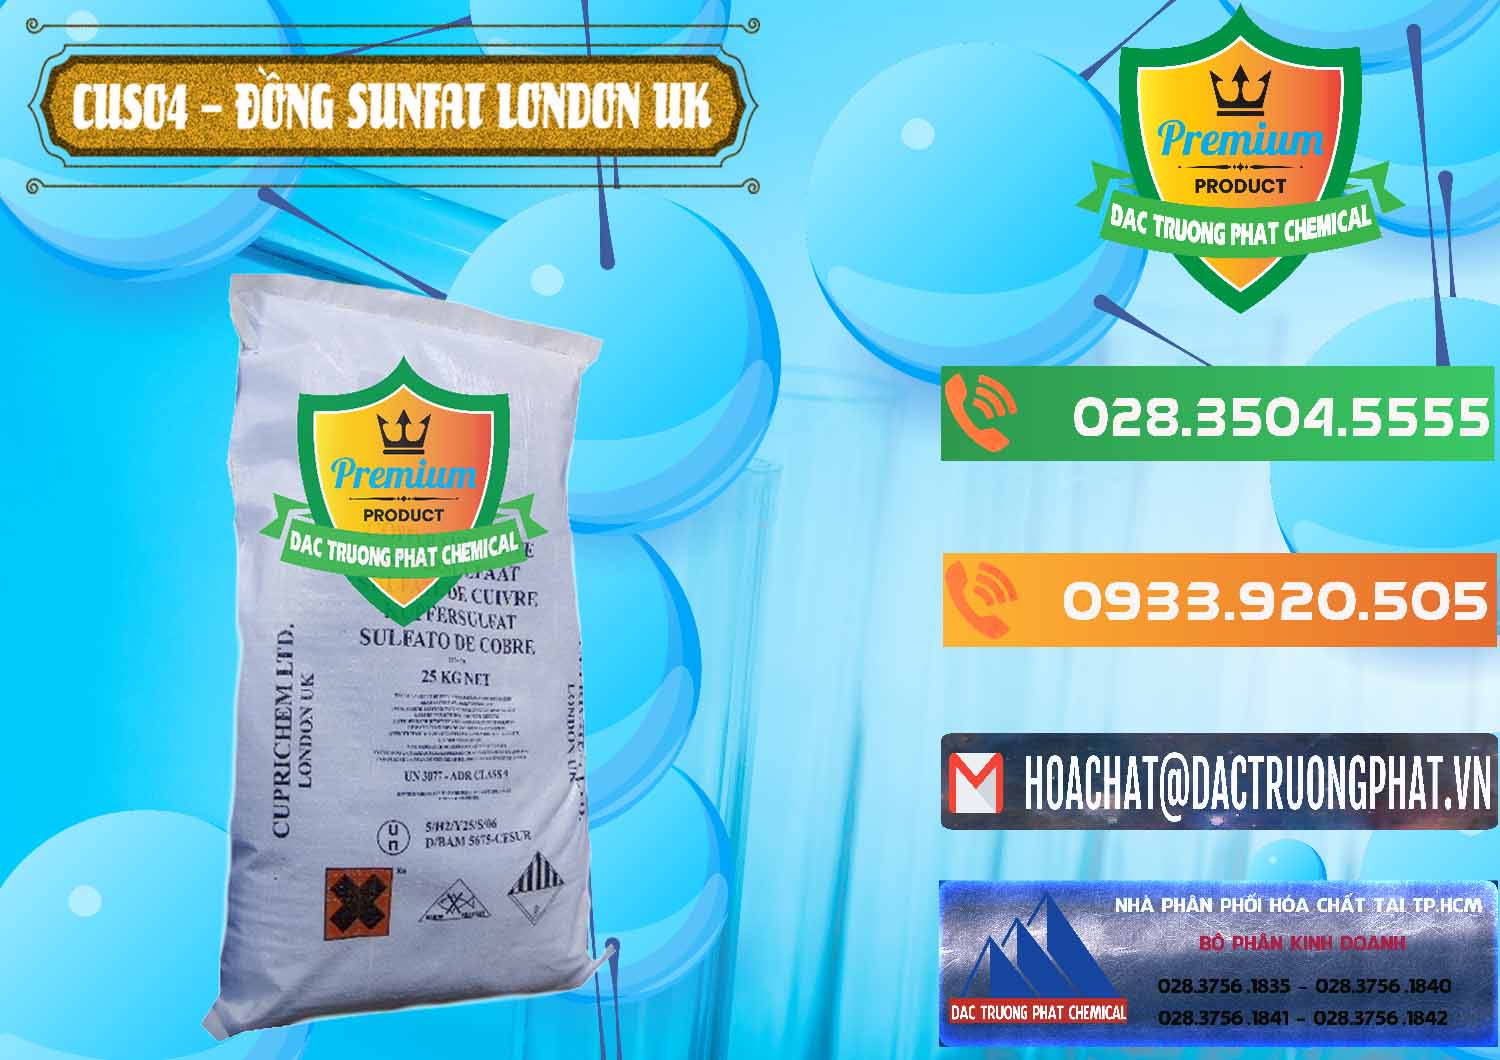 Công ty chuyên bán _ cung ứng CuSO4 – Đồng Sunfat Anh Uk Kingdoms - 0478 - Chuyên cung cấp và phân phối hóa chất tại TP.HCM - hoachatxulynuoc.com.vn